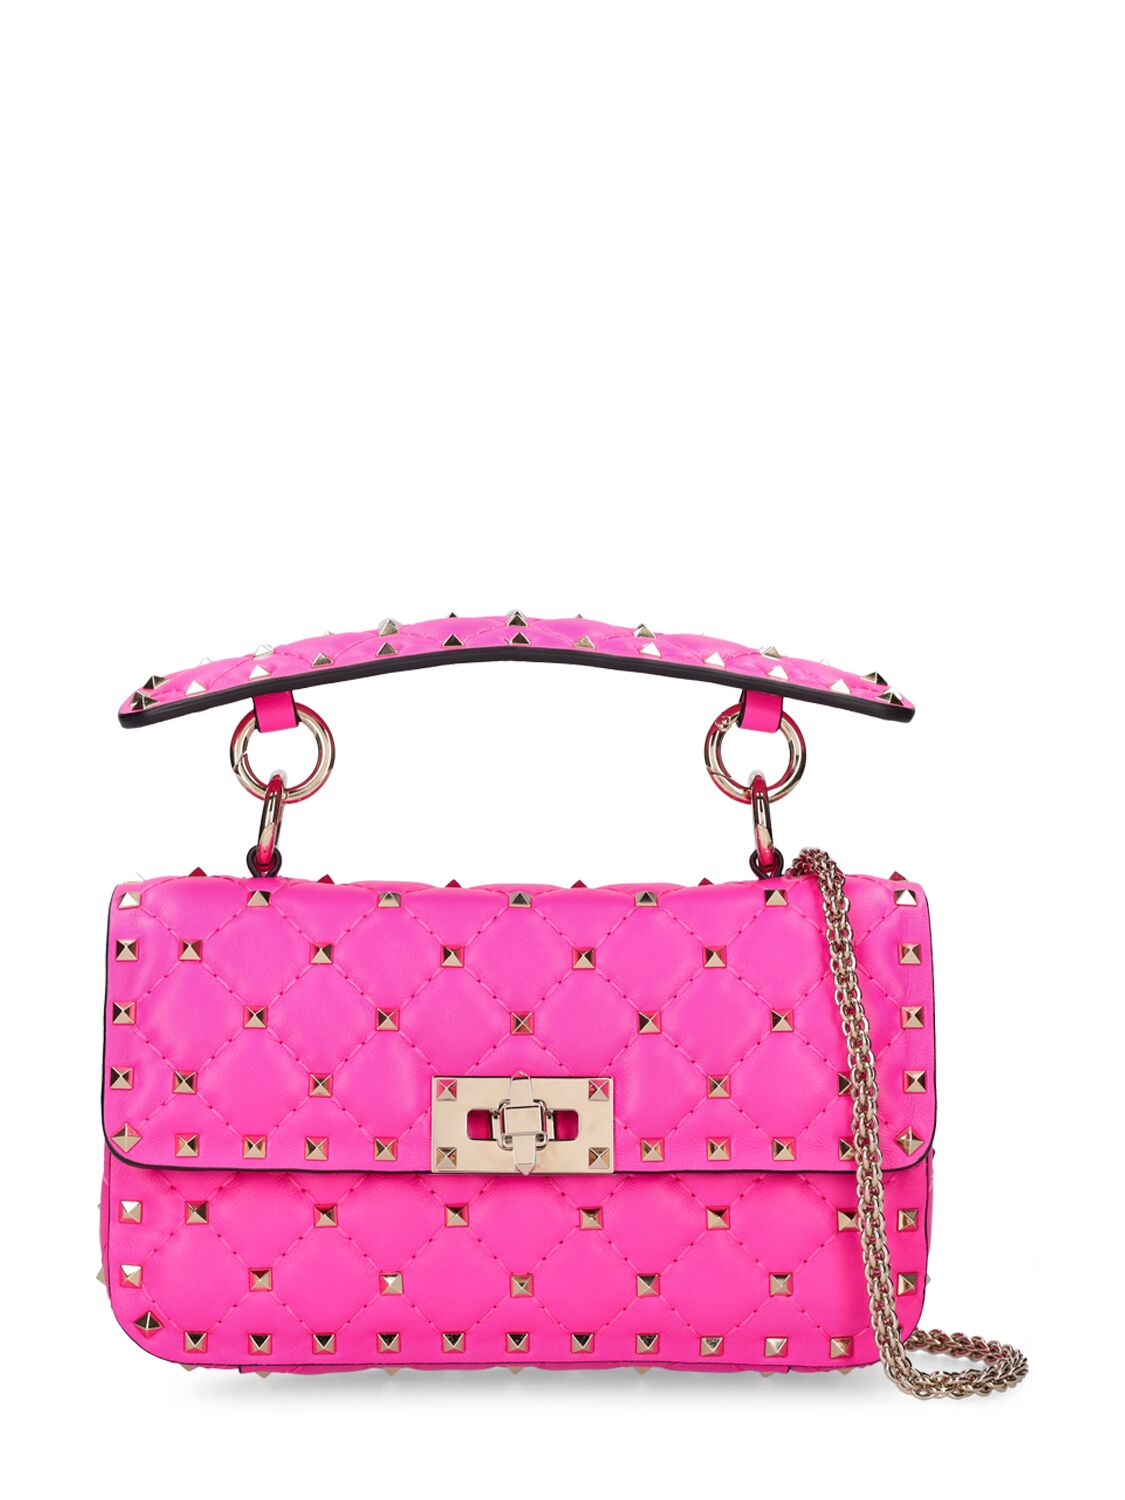 Valentino Garavani Rockstud Spike Nappa Top Handle Bag In Pp Pink